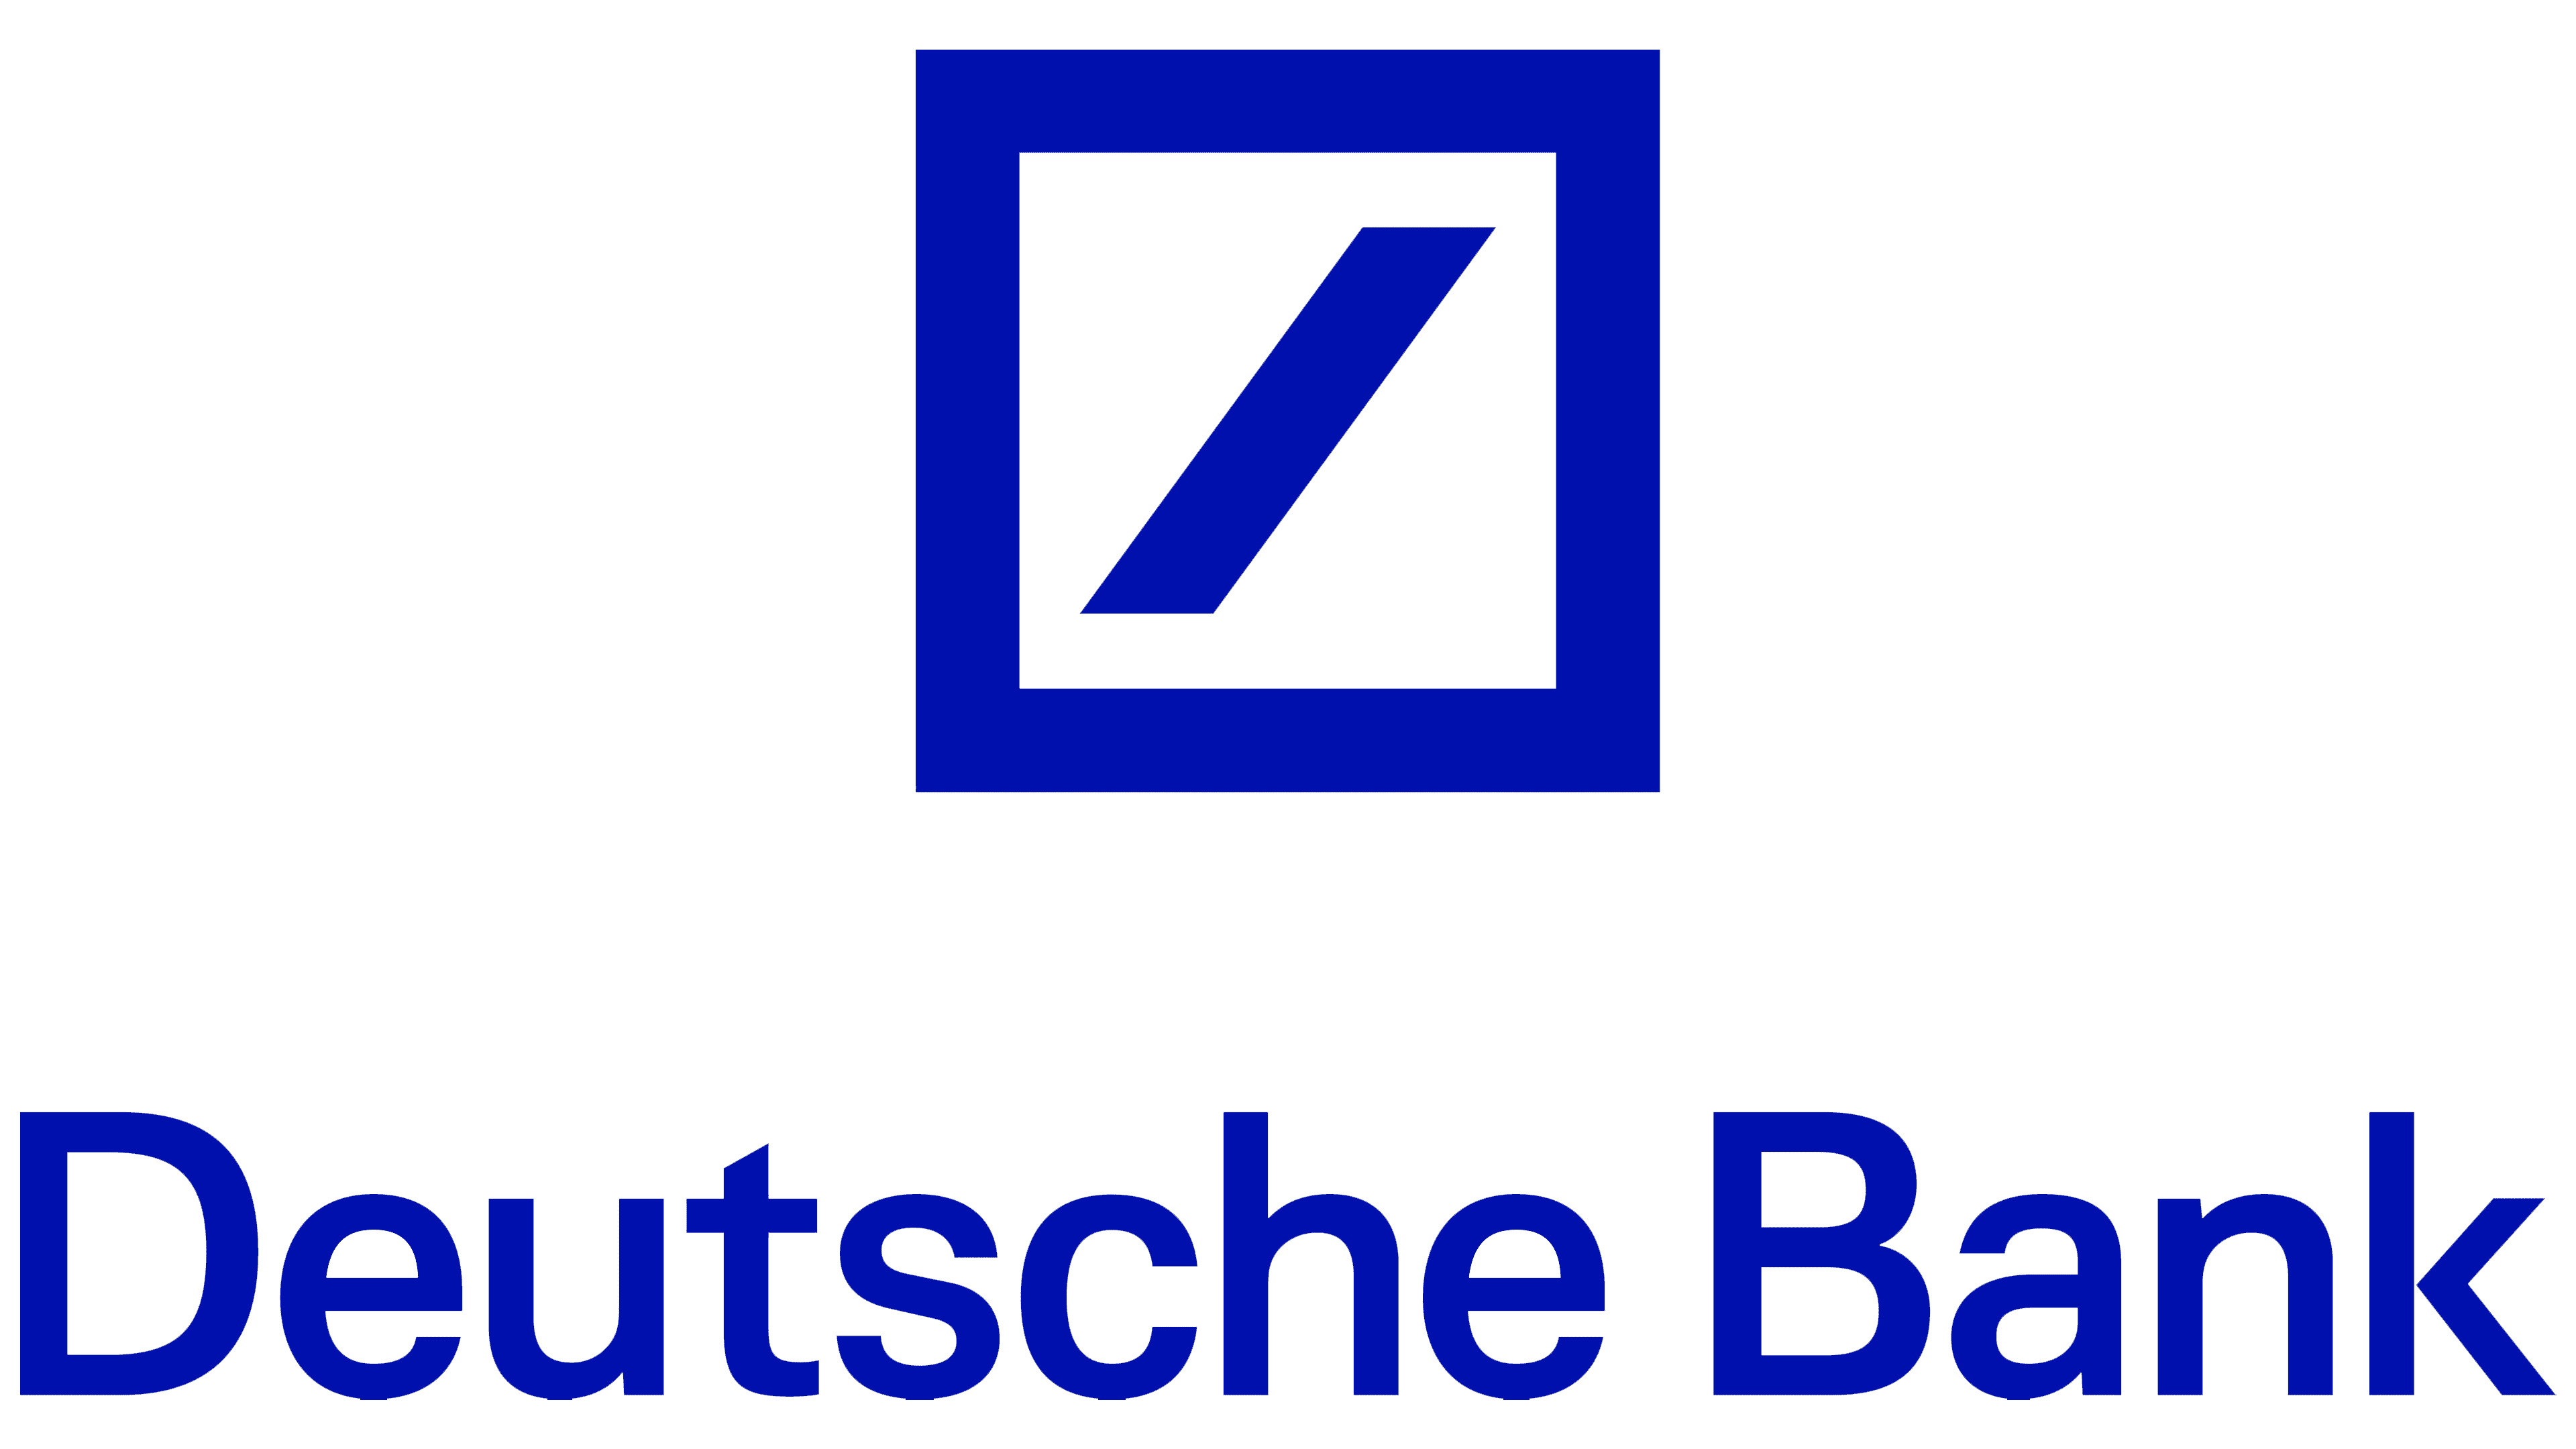 Deutsche-Bank-logo